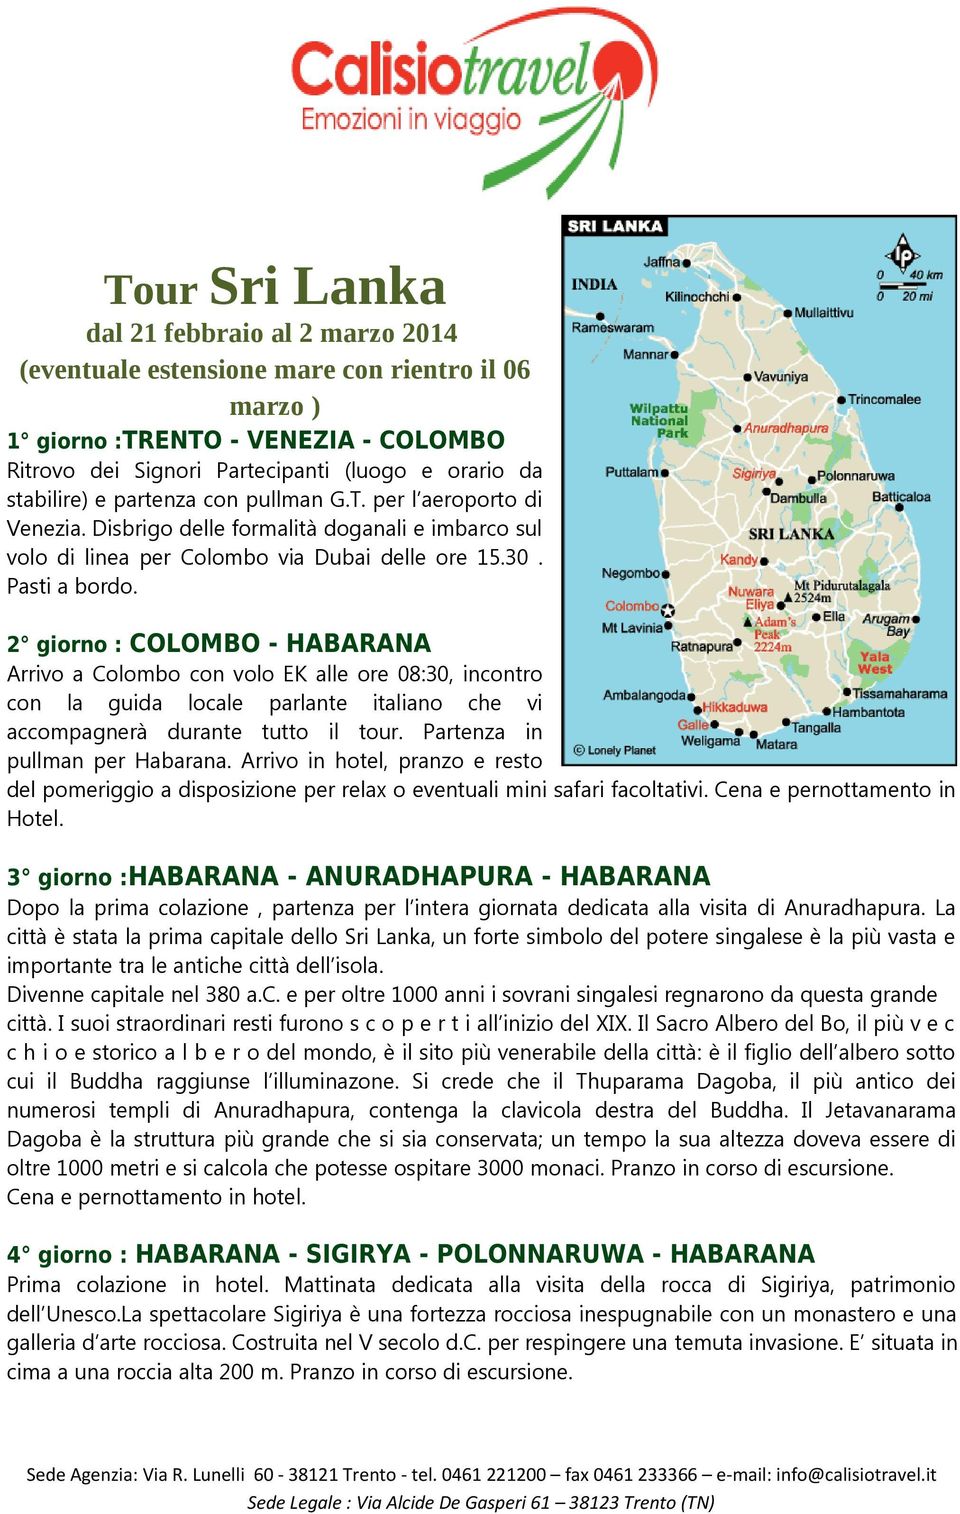 2 giorno : COLOMBO - HABARANA Arrivo a Colombo con volo EK alle ore 08:30, incontro con la guida locale parlante italiano che vi accompagnerà durante tutto il tour. Partenza in pullman per Habarana.